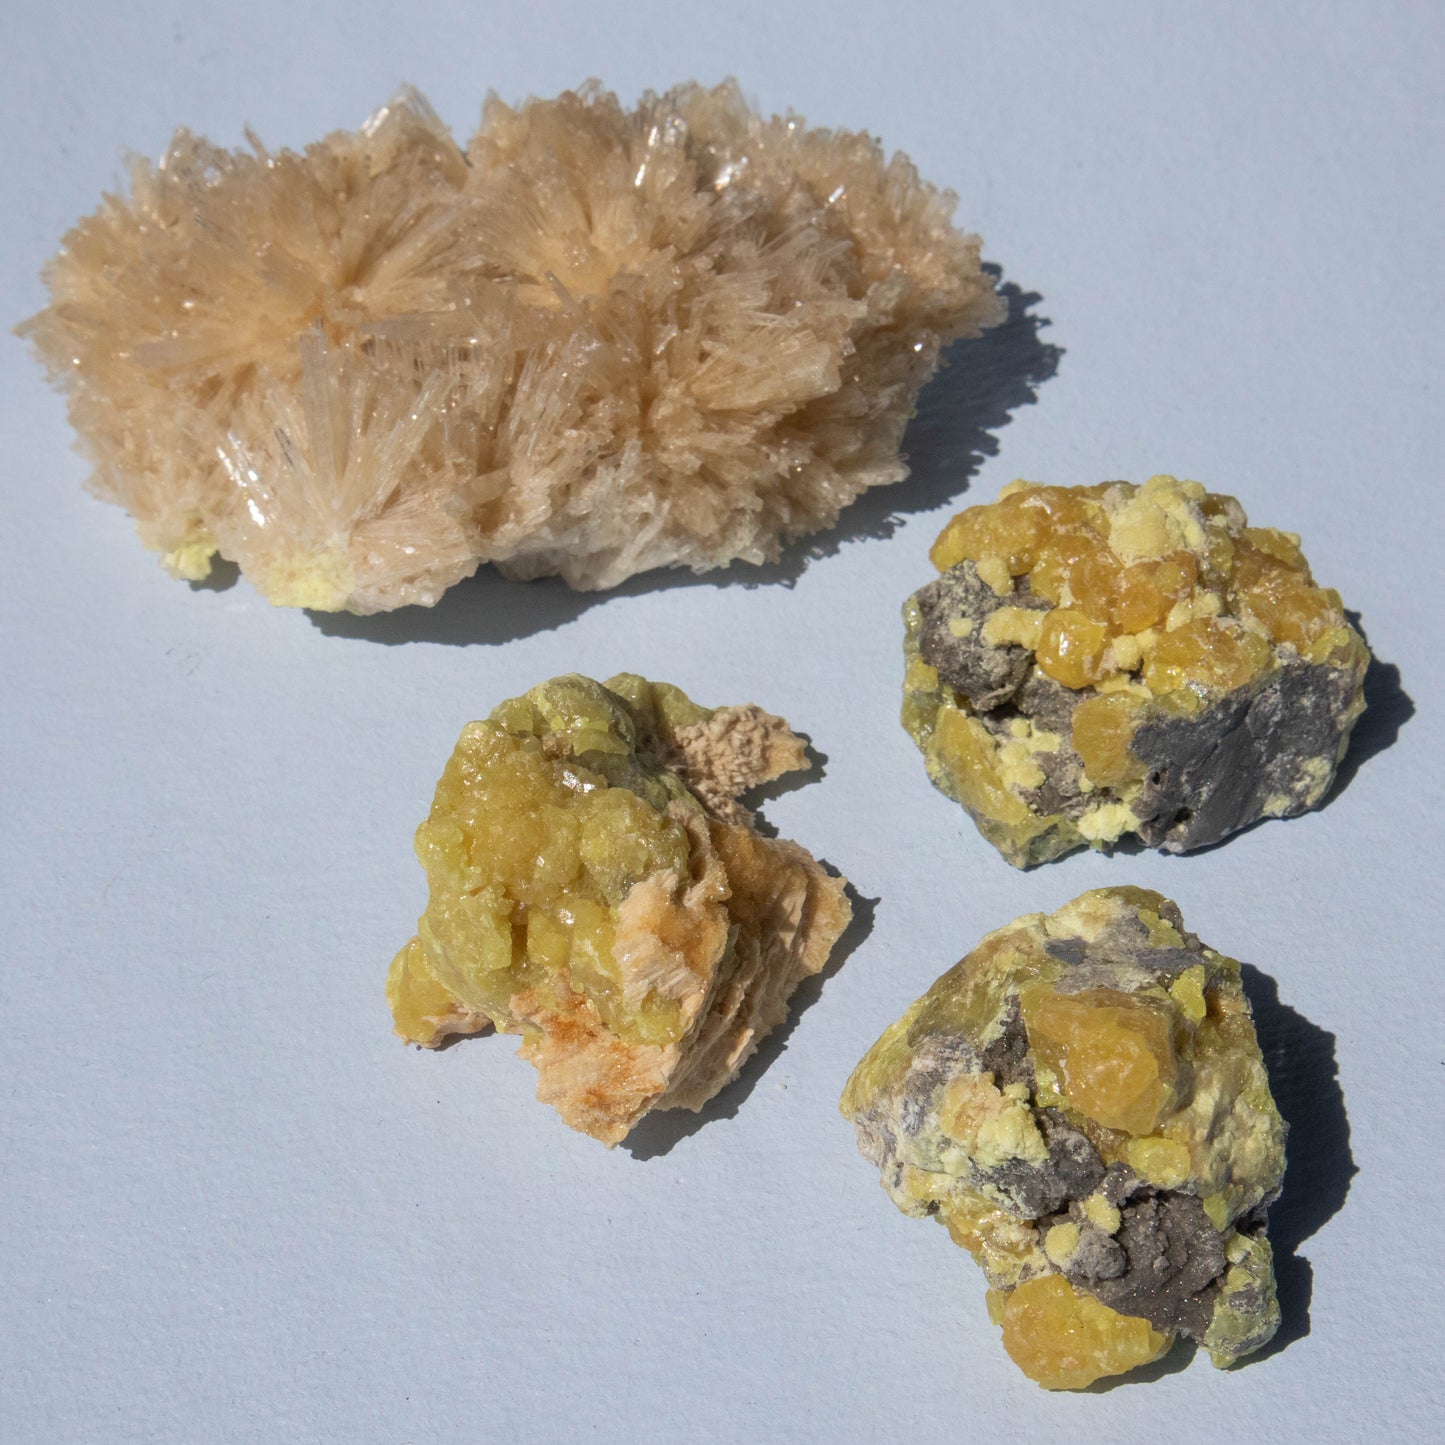 sulfur, sulfur quartz, sulfur quartz specimen, crystal specimen, gemstone specimen, sulfur quartz crystal, sulfur quartz stone, sulfur quartz properties, sulfur quartz healing properties, sulfur quartz metaphysical properties, sulfur quartz meaning